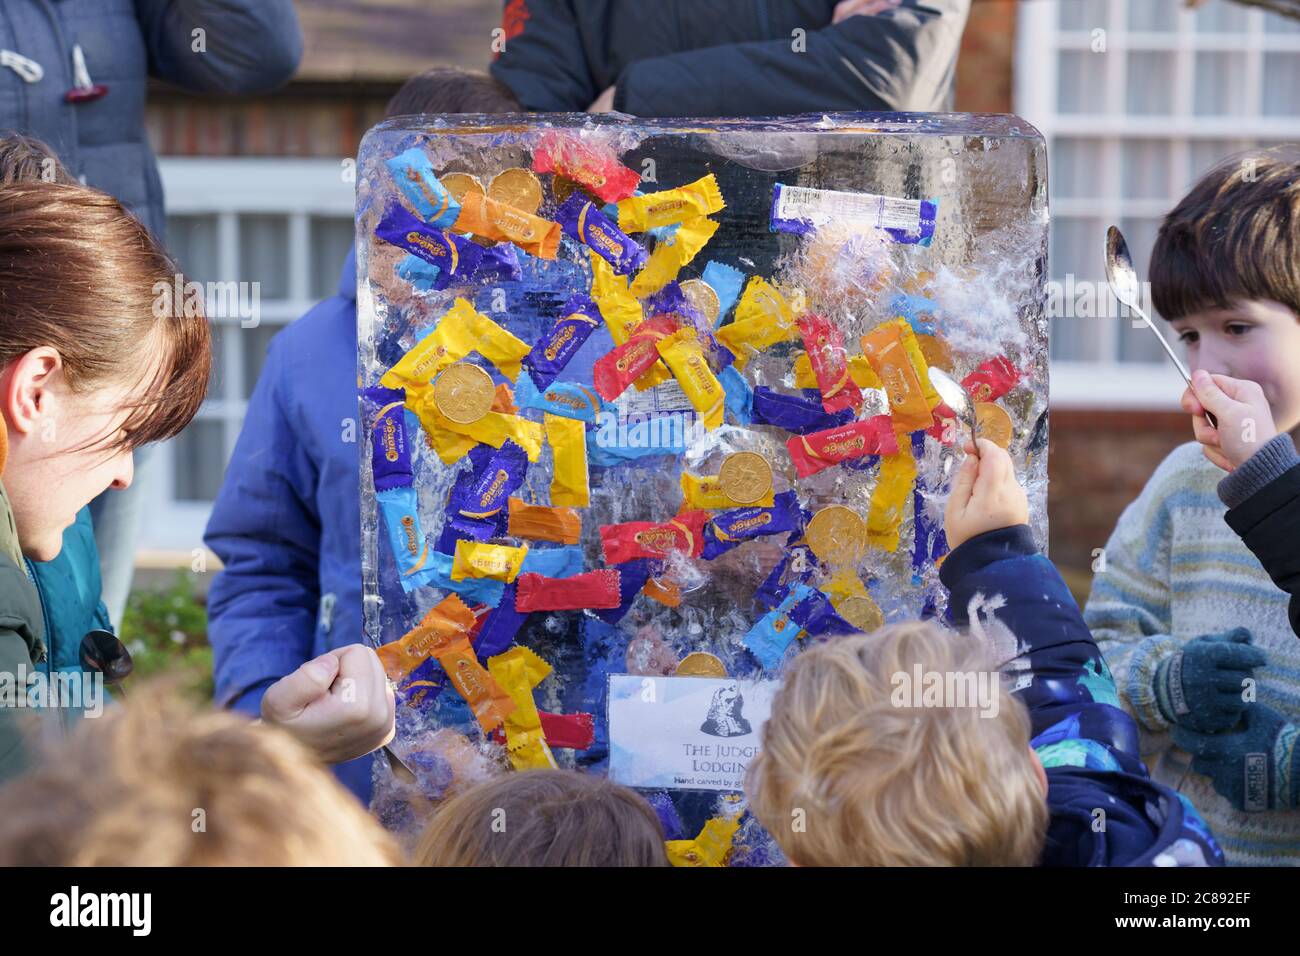 Un groupe d'adultes et d'enfants hack à un morceau de glace avec des cuillères pour atteindre des bonbons et des pièces emballés à The Myths and Legends, York Ice Trail, Angleterre, Royaume-Uni. Banque D'Images